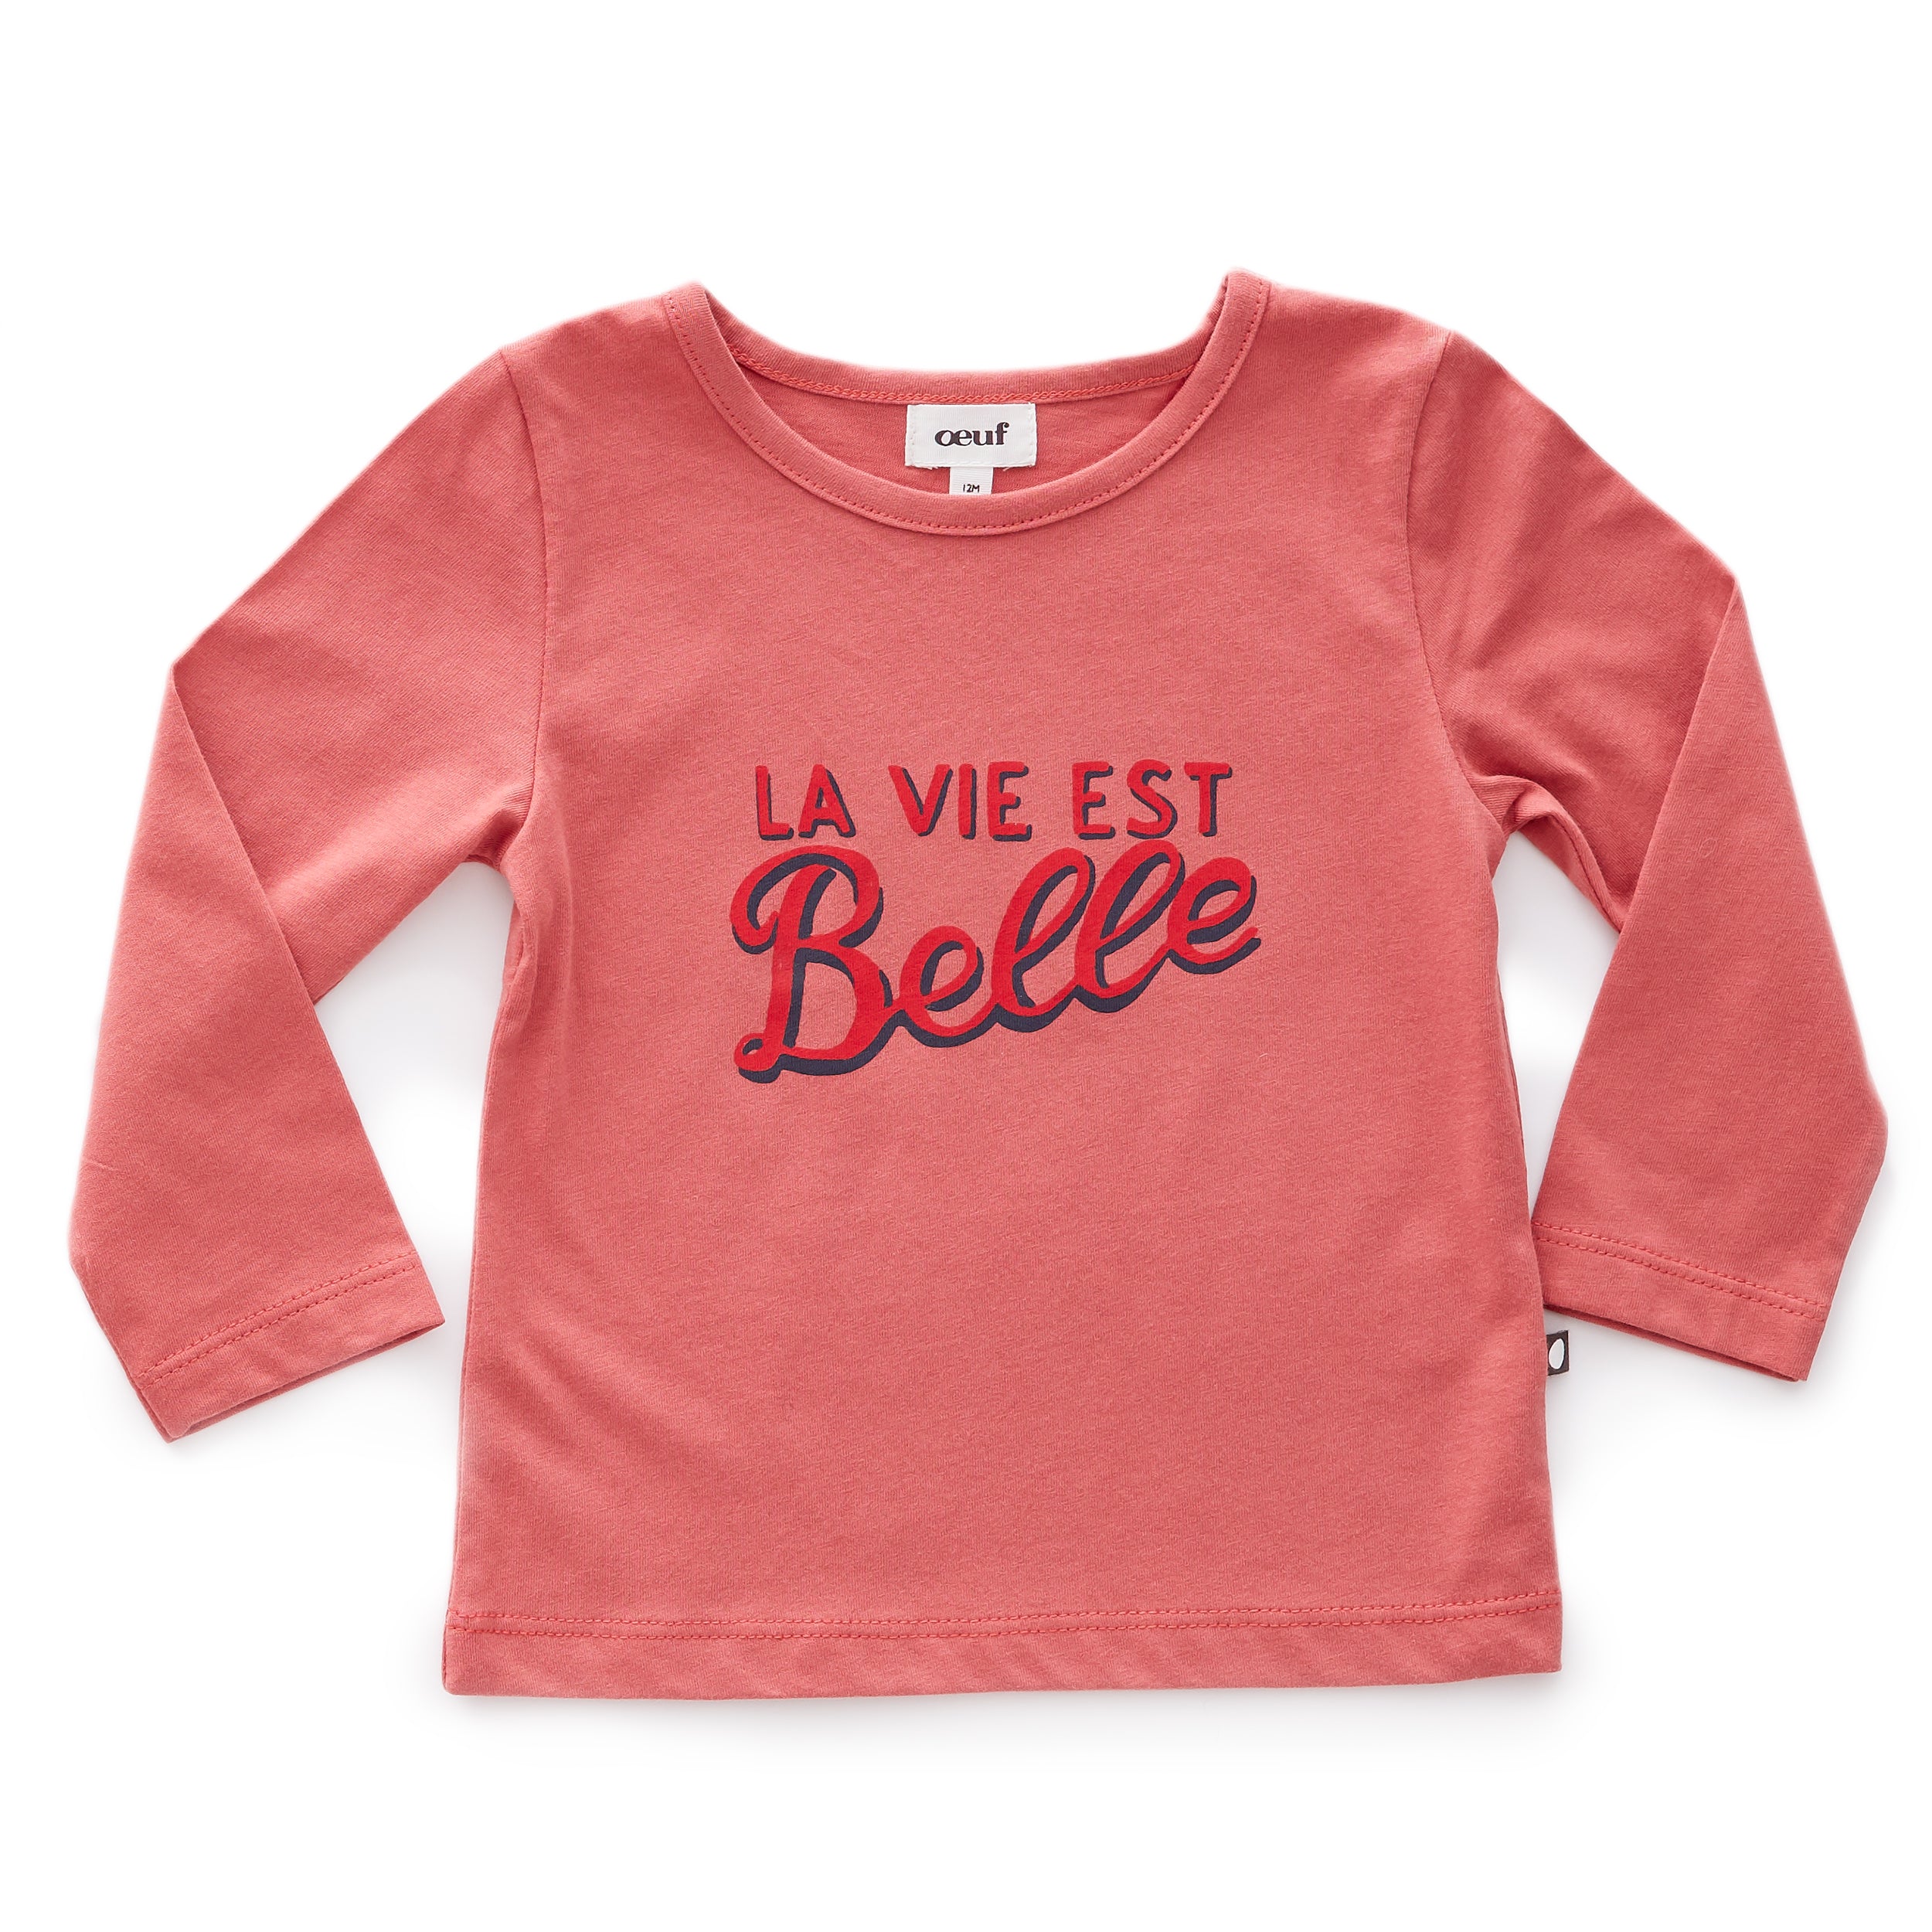 Girls Belle & Red Organic Cotton T-shirt